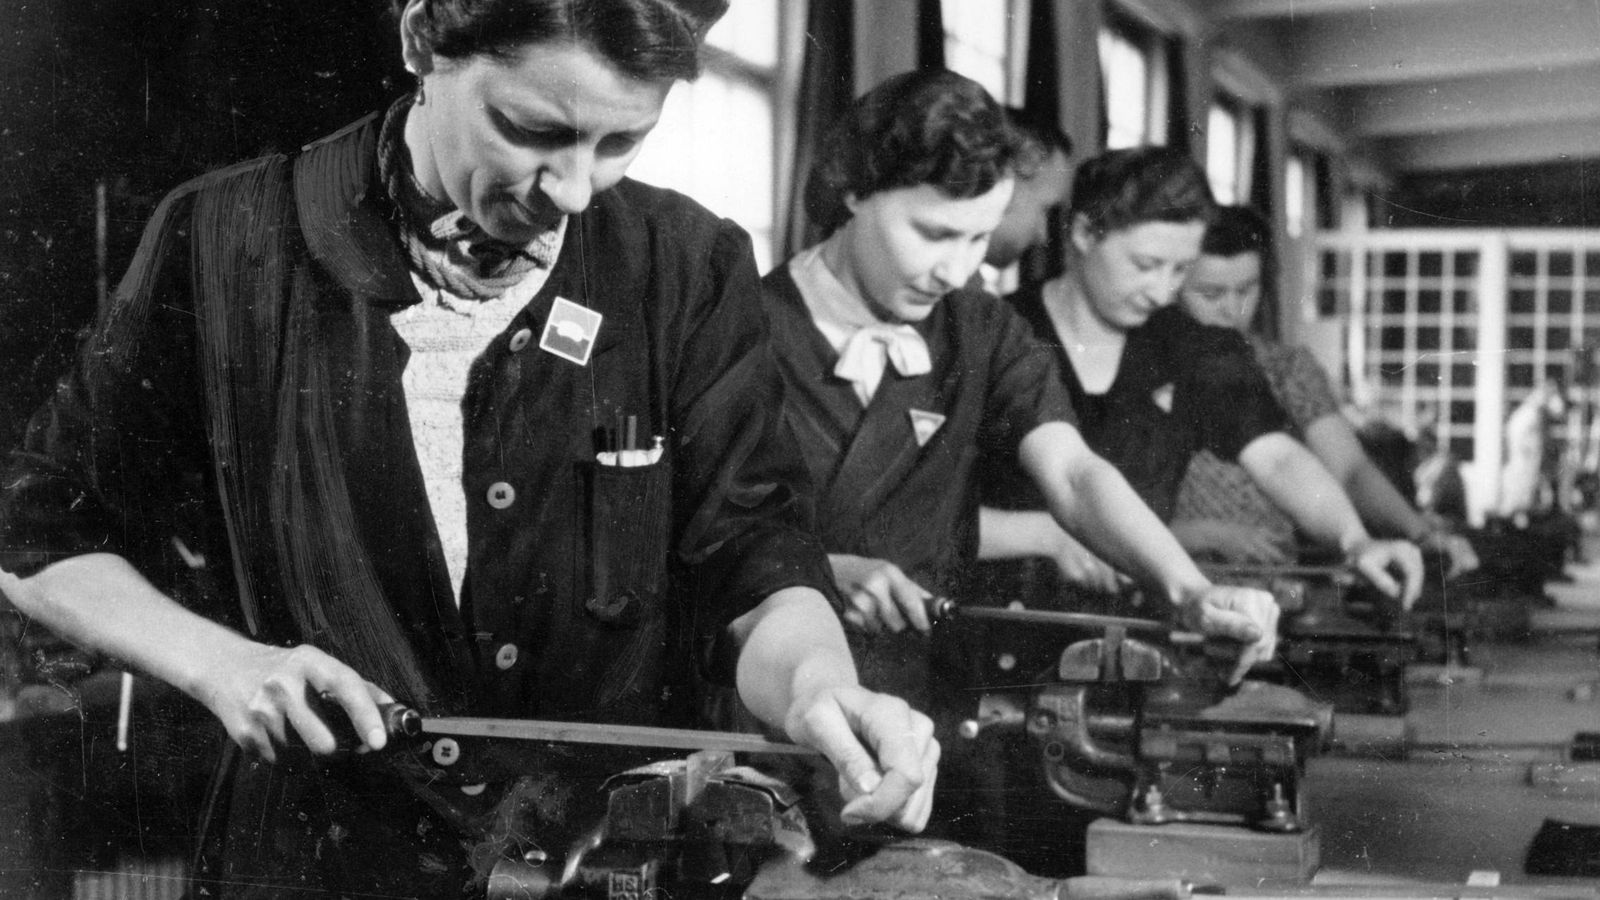 Foto: Obreras en una fábrica de armamento durante la Segunda Guerra Mundial. (Foto: Berliner Verlag/Cordon Press)